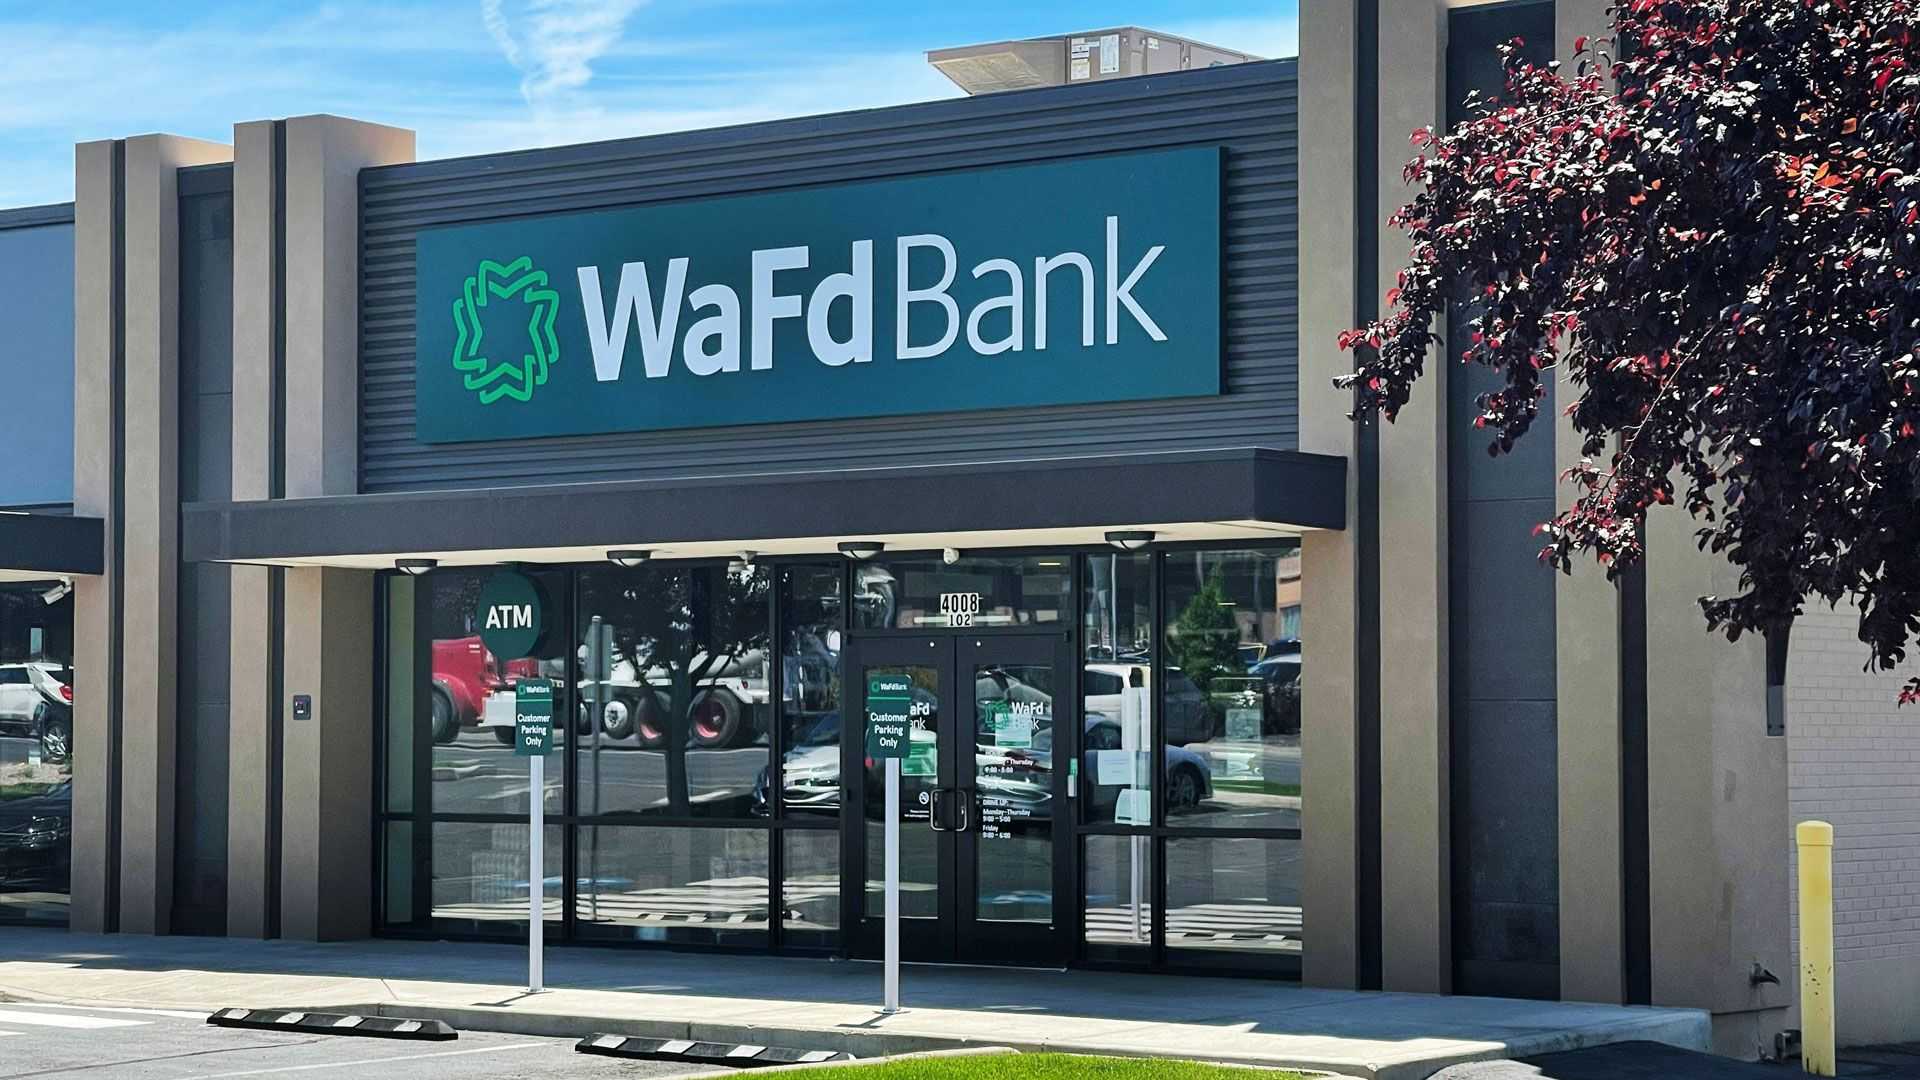 WaFd Bank in Yakima, Washington #1257 - Washington Federal.